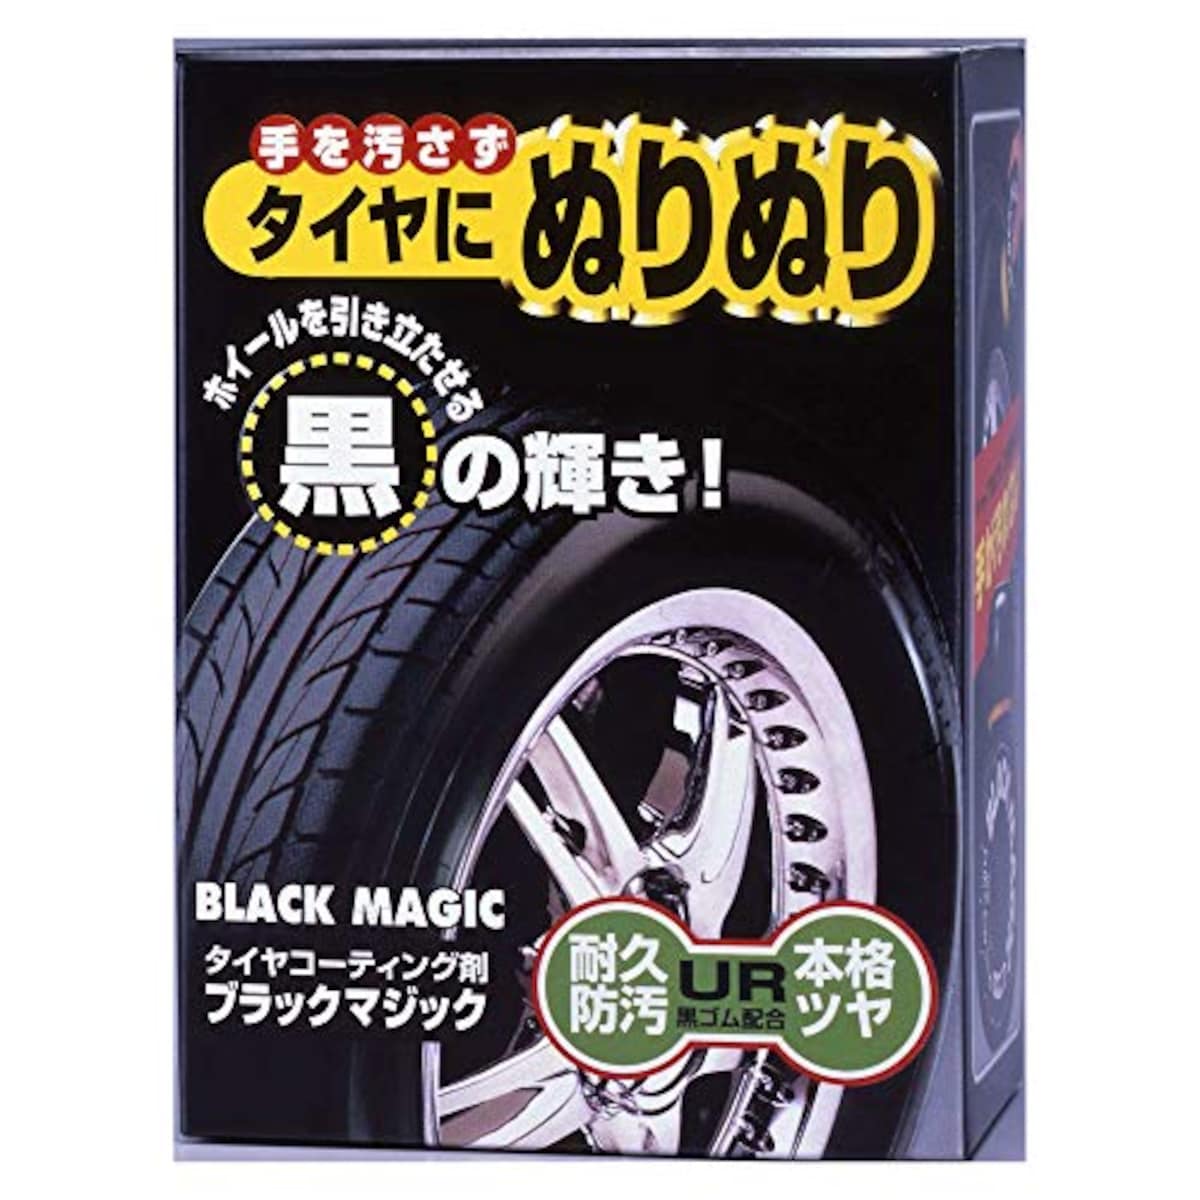 タイヤコーティング剤 ブラックマジック